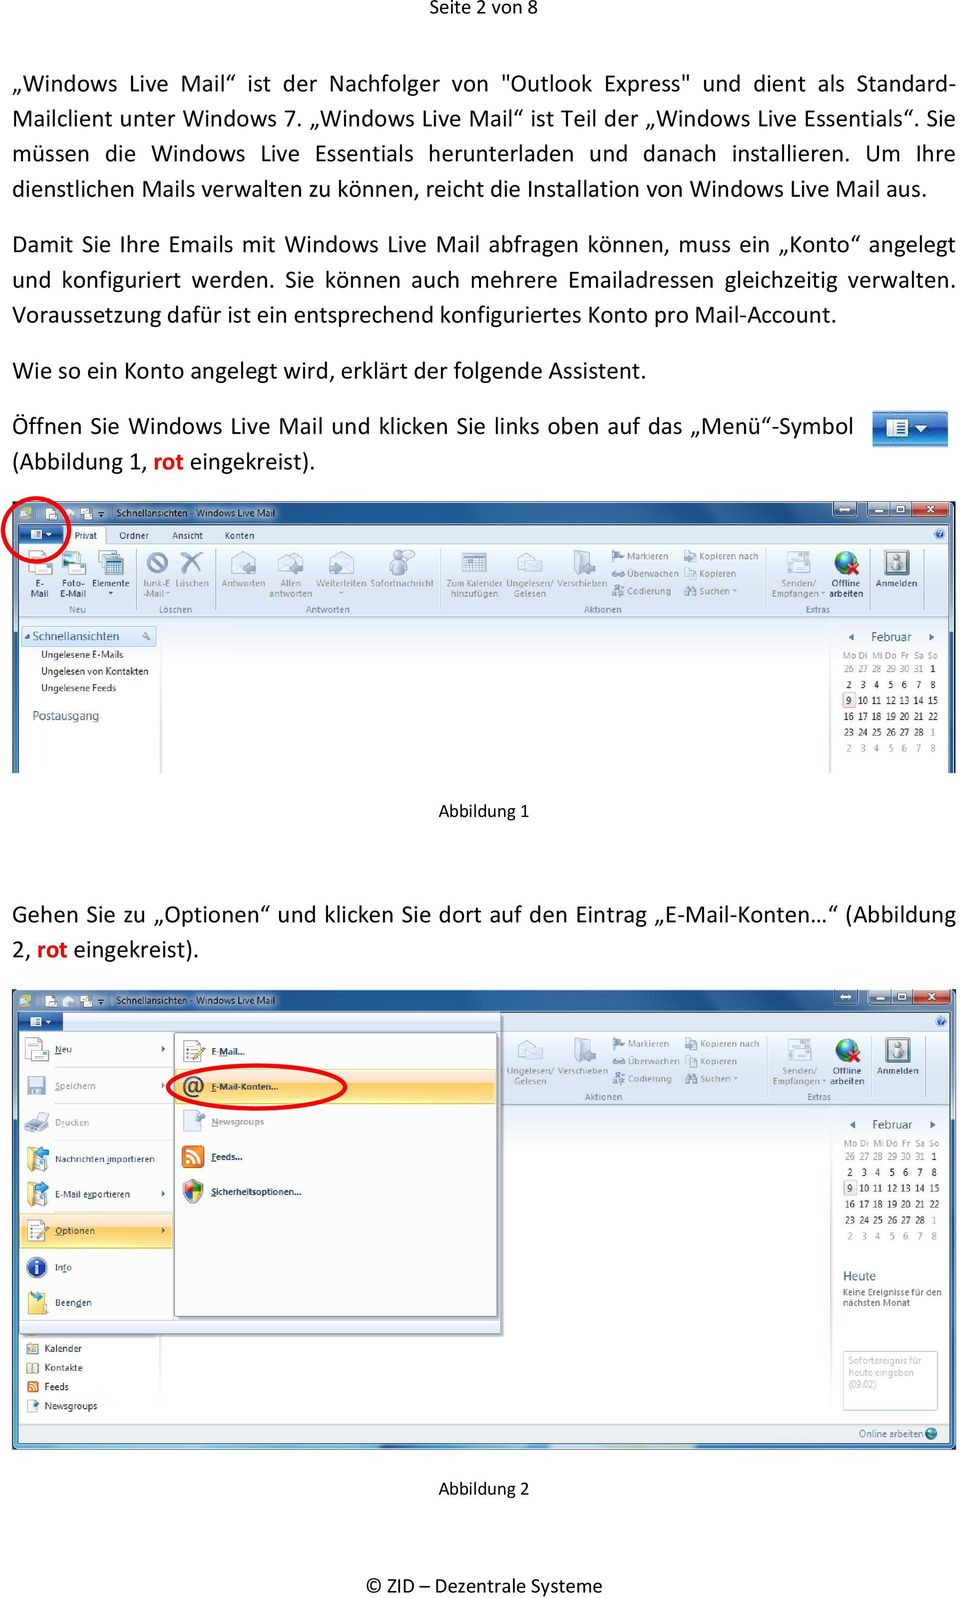 Damit Sie Ihre Emails mit Windows Live Mail abfragen können, muss ein Konto angelegt und konfiguriert werden. Sie können auch mehrere Emailadressen gleichzeitig verwalten.